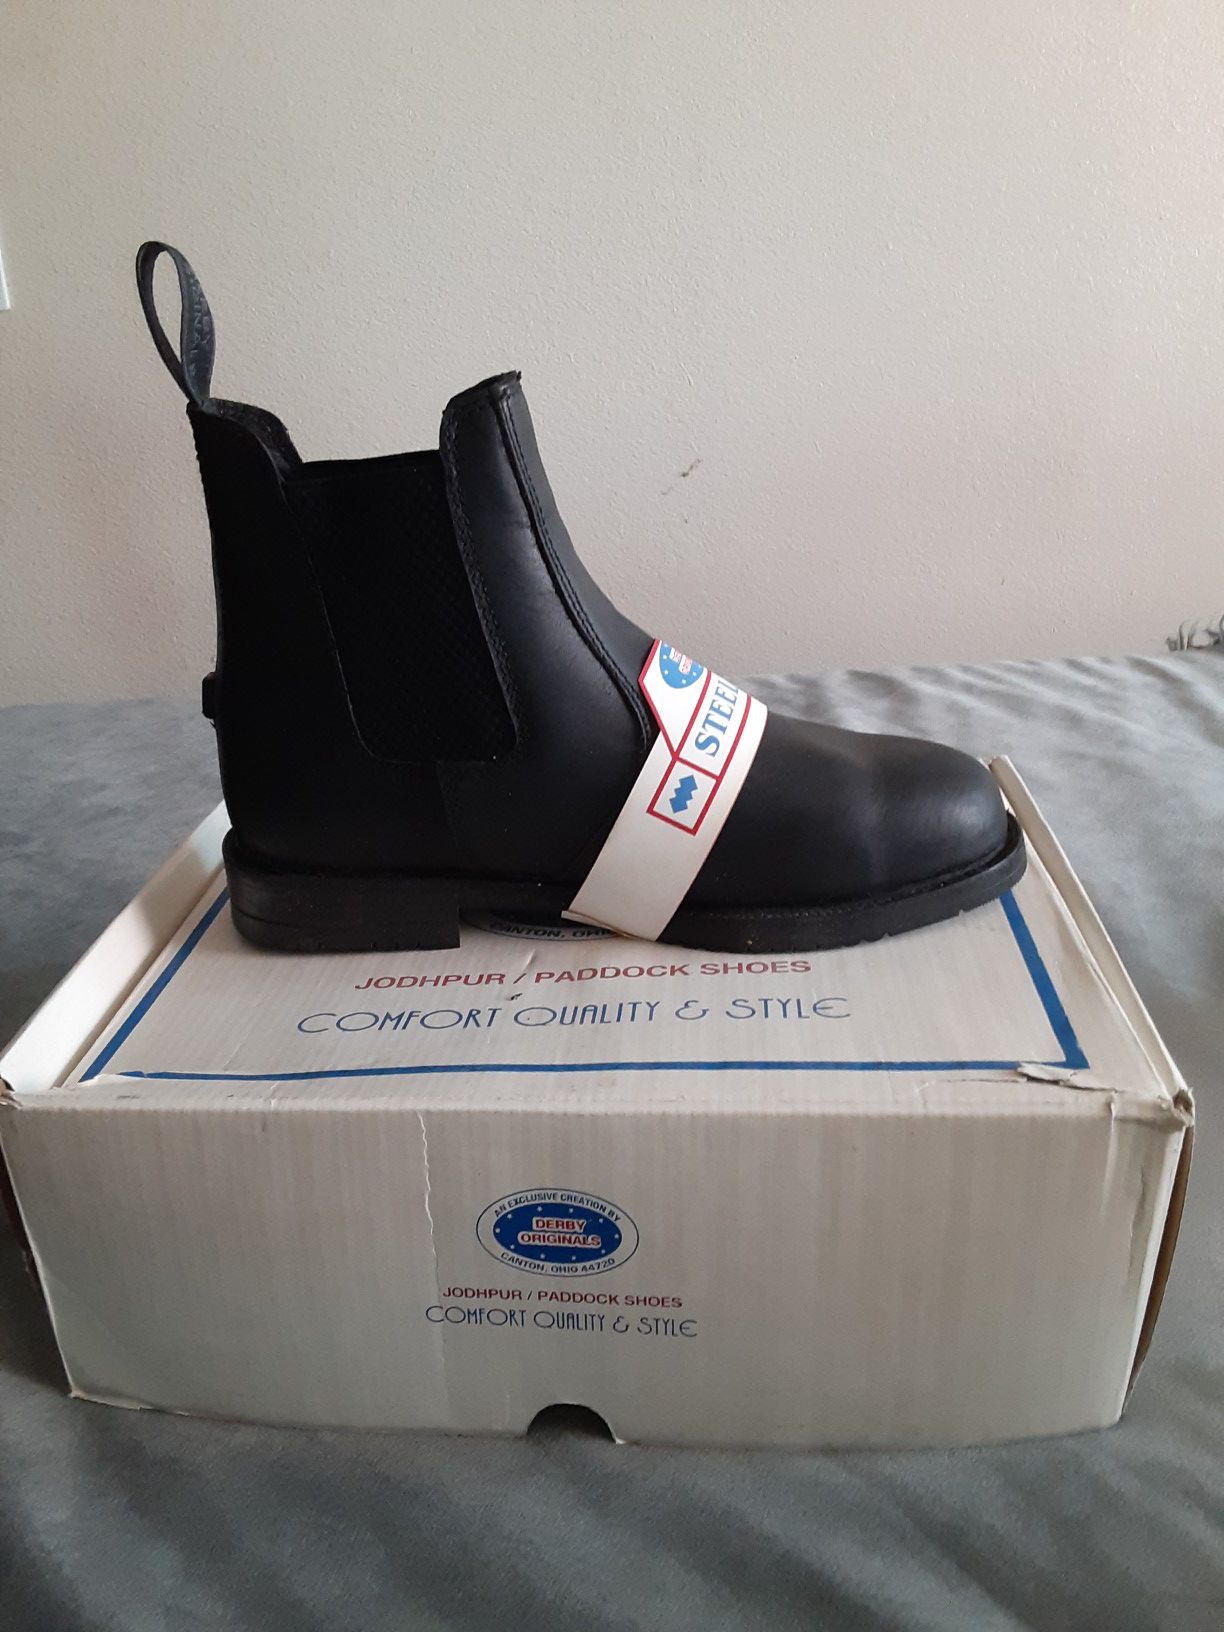 Derby Originals Jodhpur/STEEL-TOE Paddock shoes NEW (women's size 8)